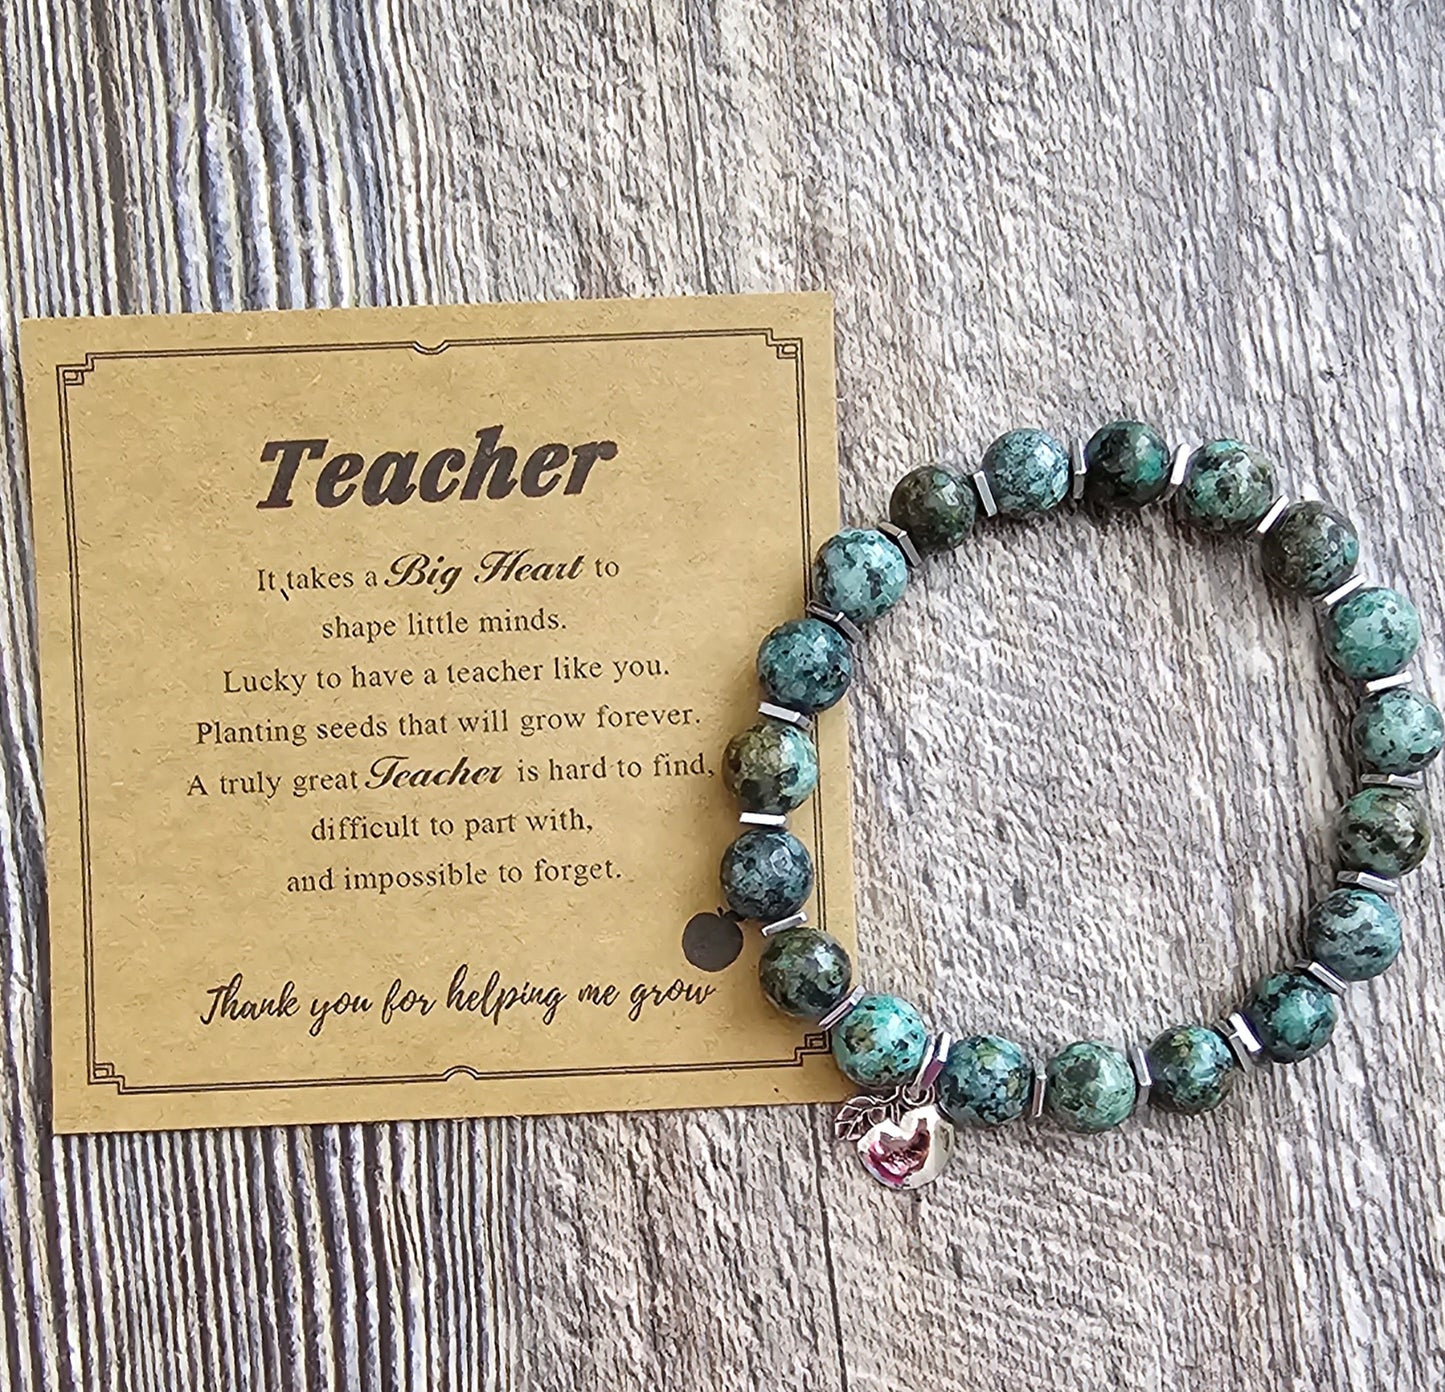 Teacher Gift Bracelet